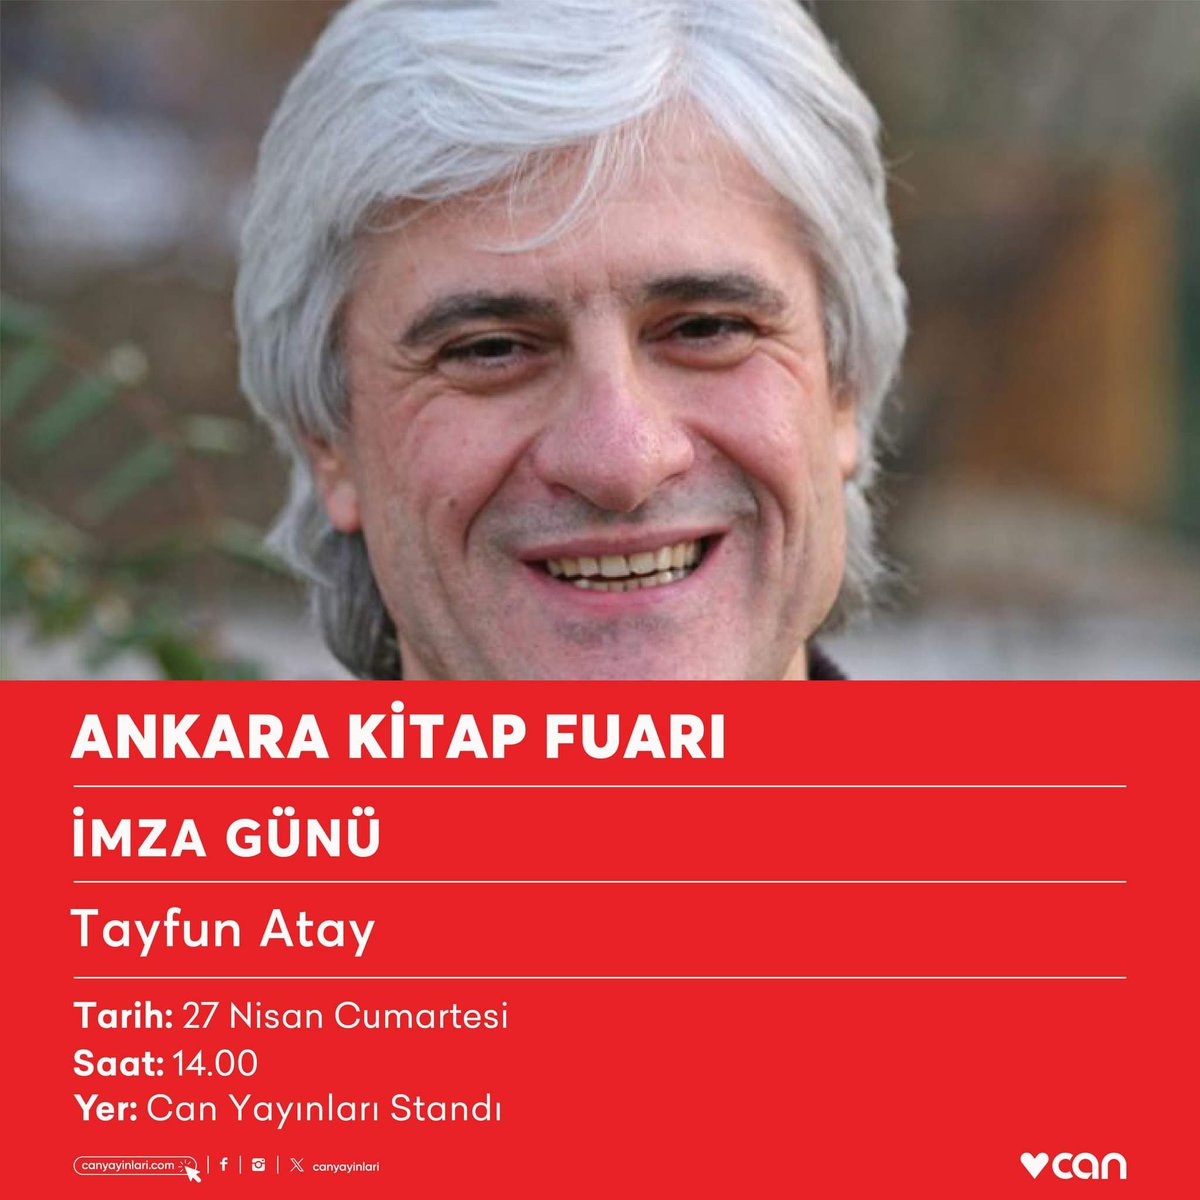 Tayfun Atay bugün saat 14.00’te #AnkaraKitapFuarı Can Yayınları standında kitaplarını imzalayacak.